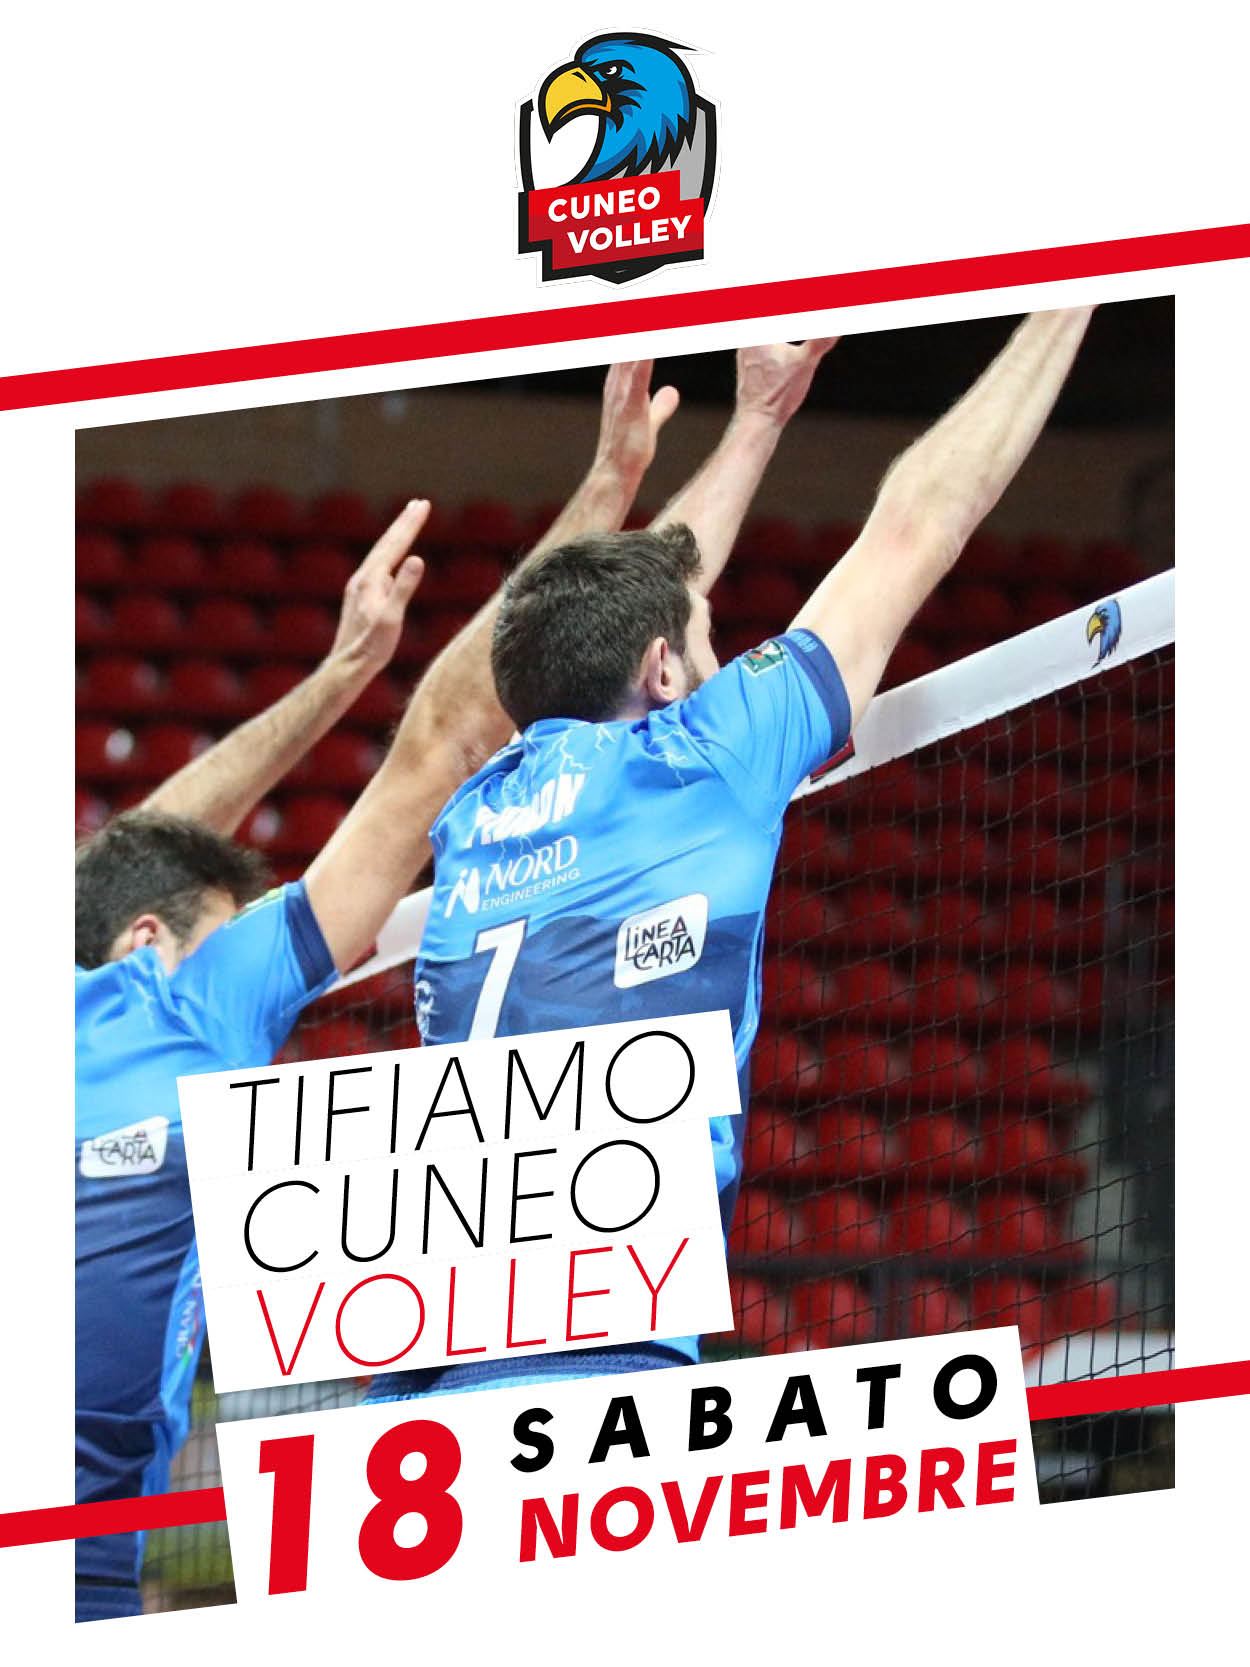 Sabato 18 Novembre - Tifiamo Cuneo Volley